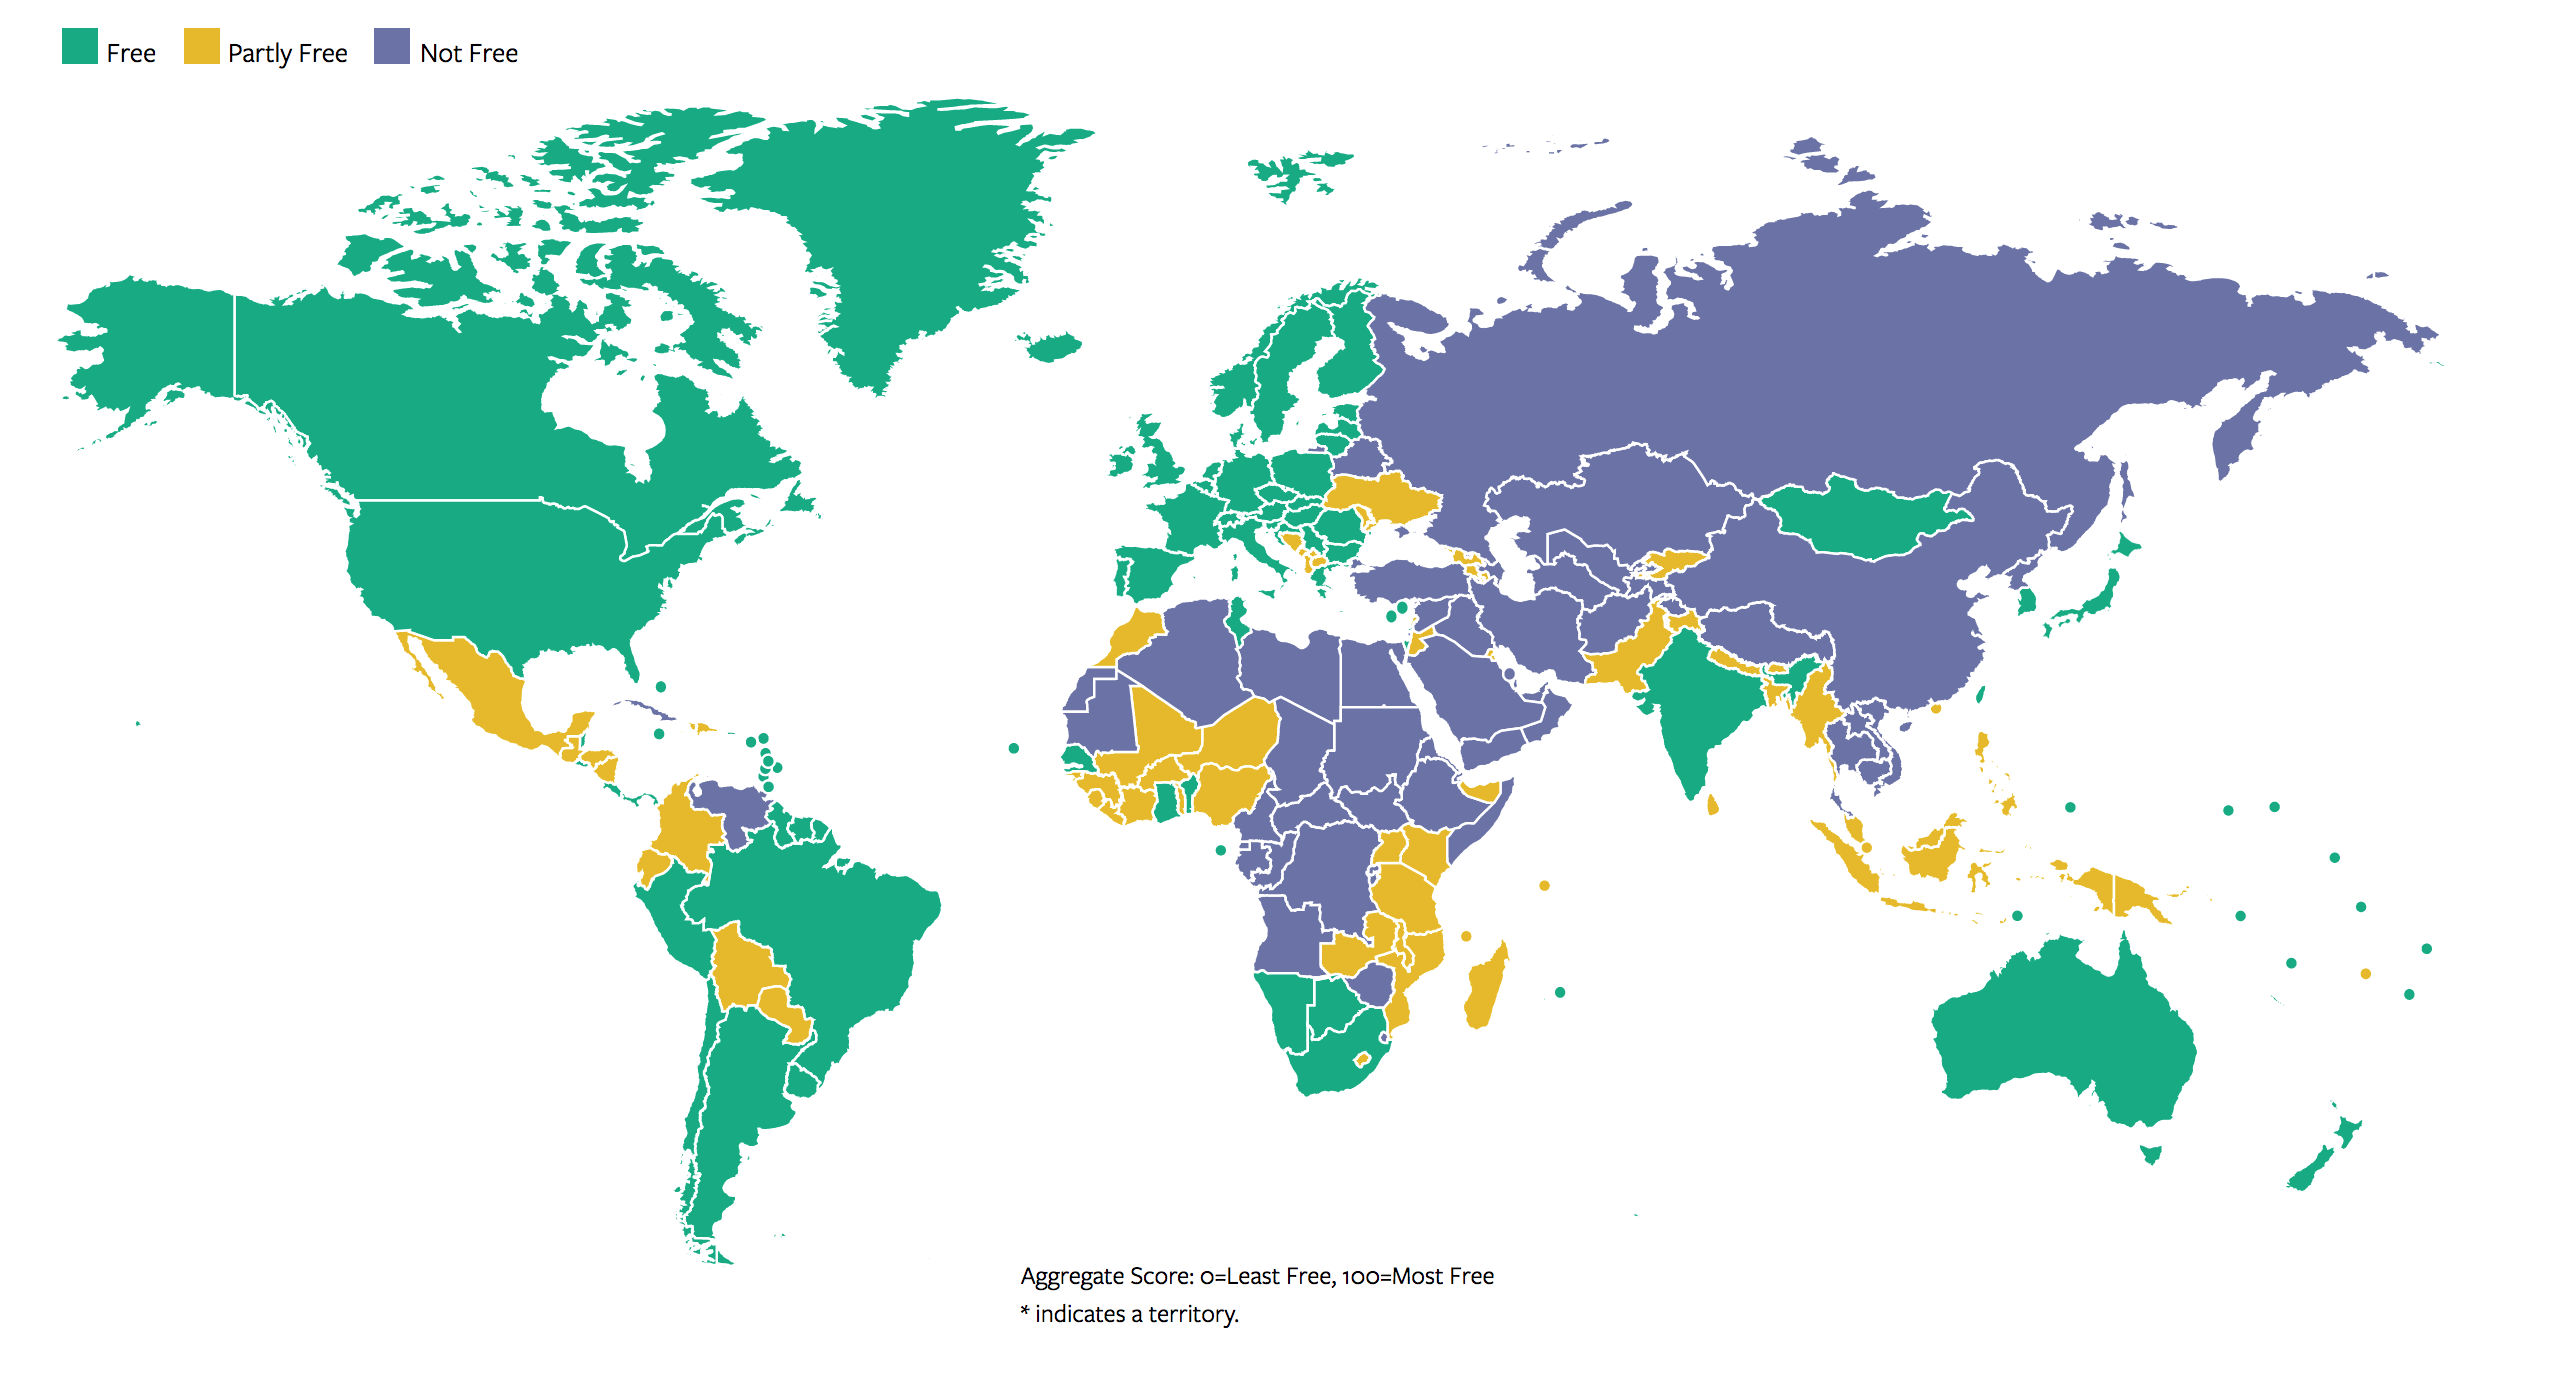 خريطة العالم من حيث الحريات والديمقراطية (فريدوم هاوس)